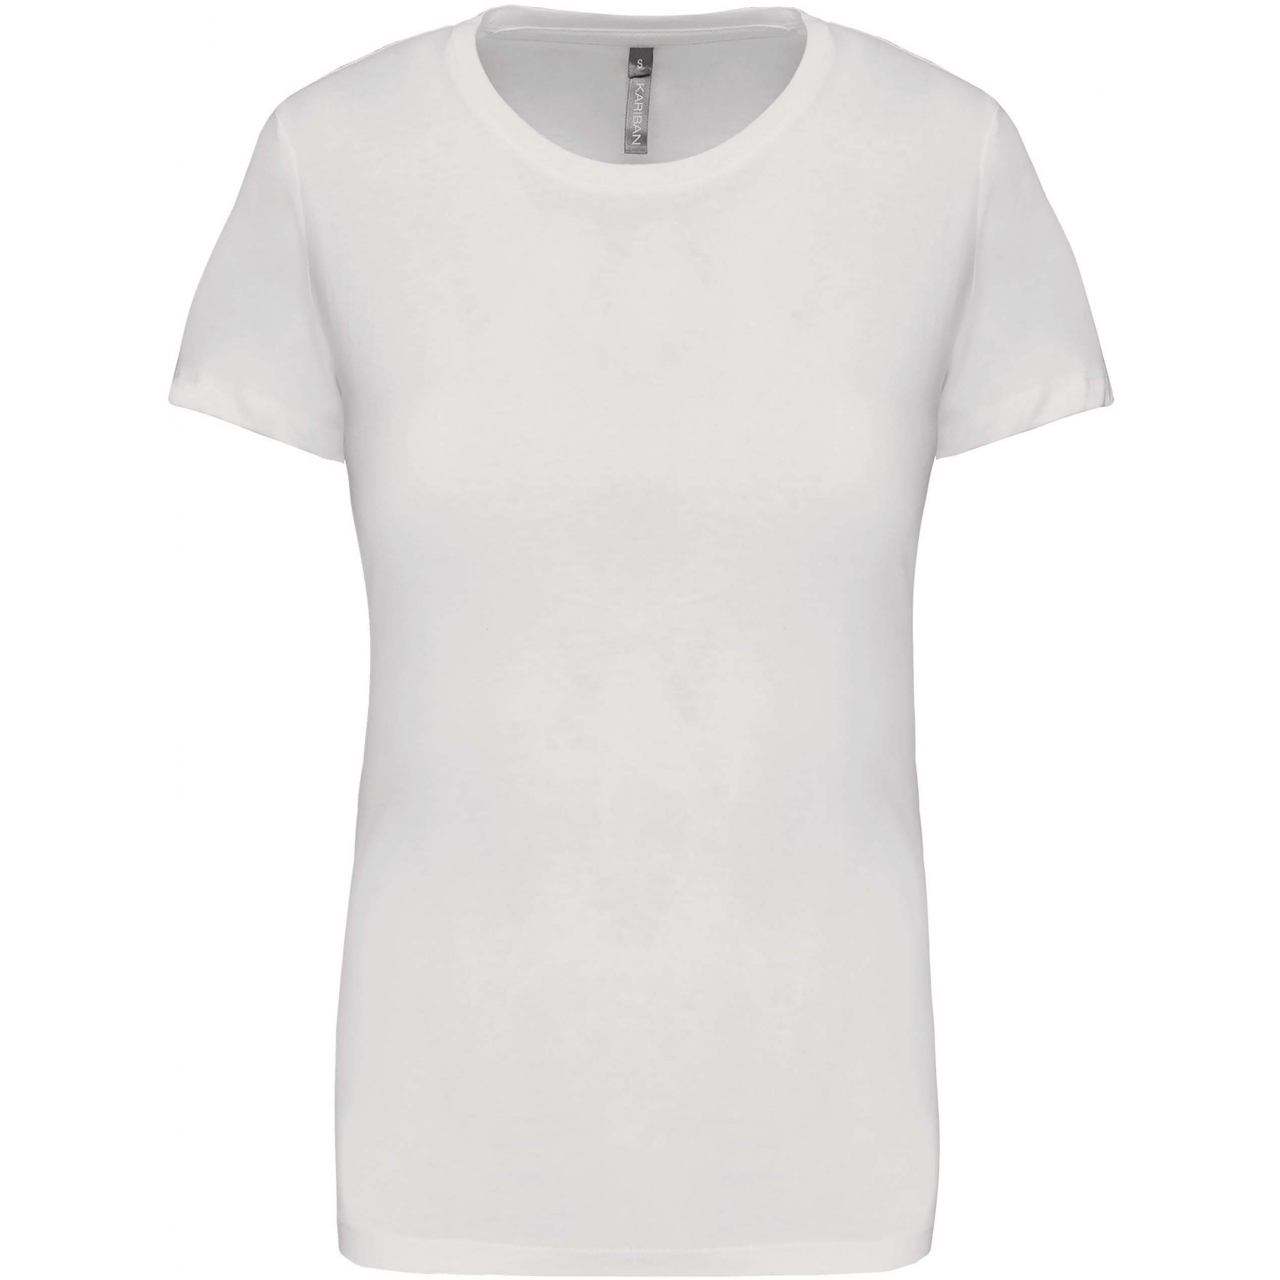 Dámské tričko Kariban s krátkým rukávem - bílé, 3XL